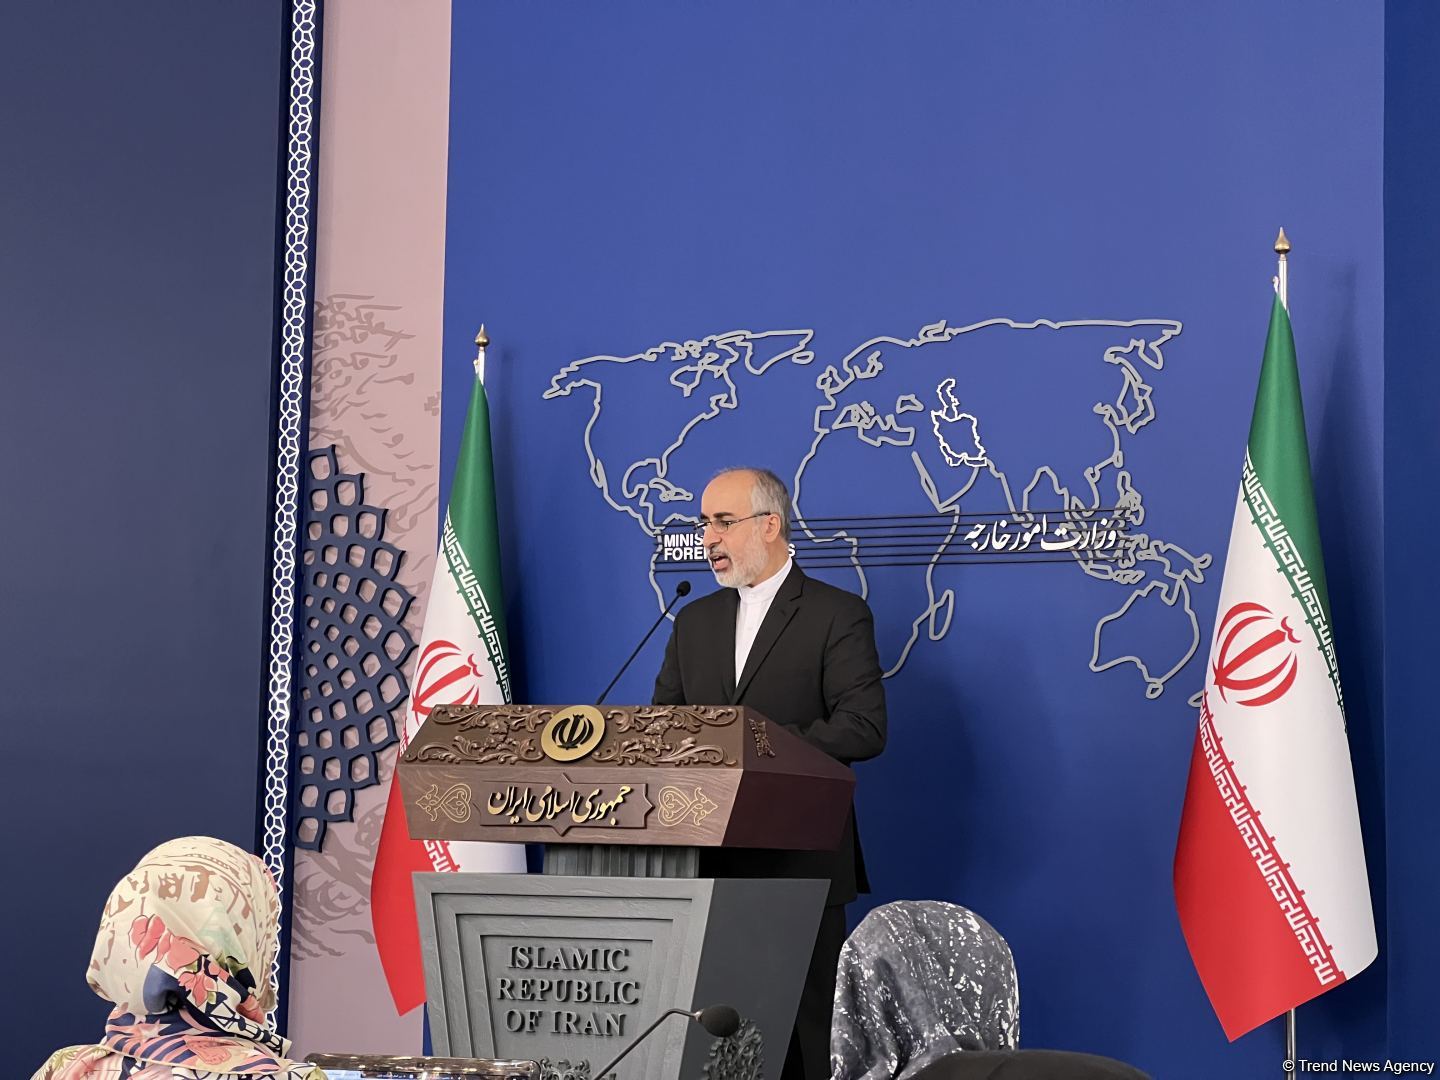 Иран отозвал аккредитацию у восьми инспекторов МАГАТЭ